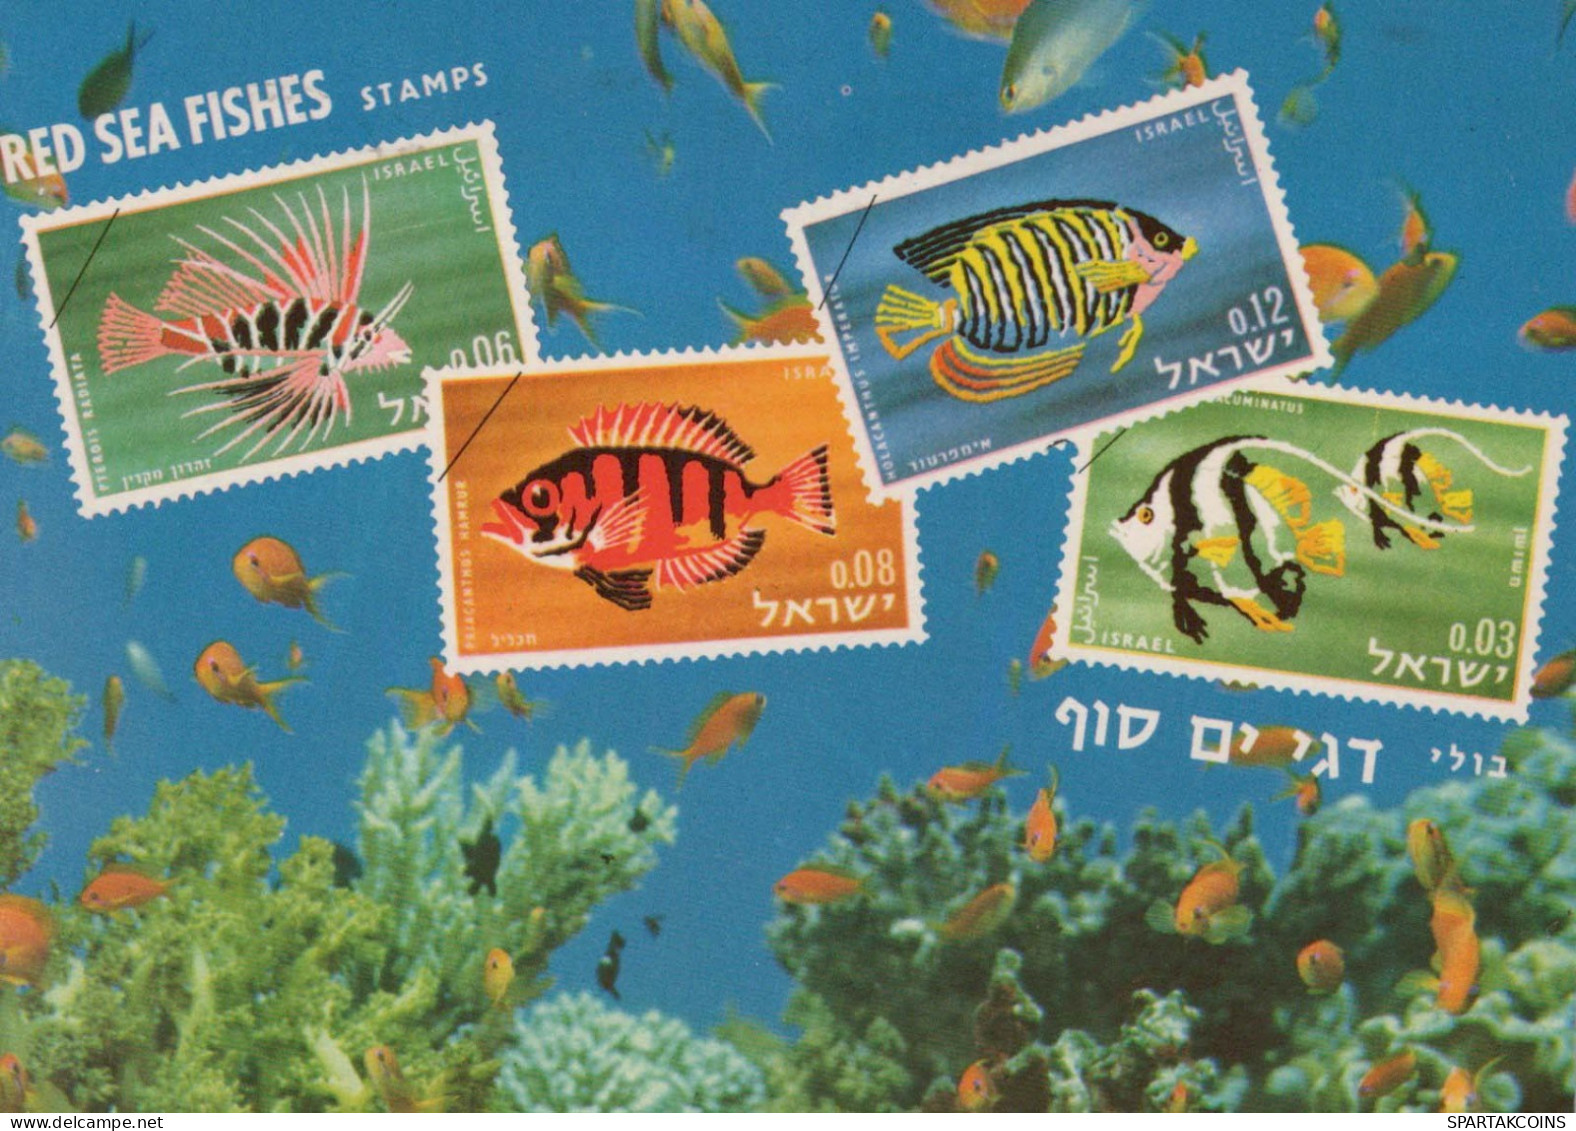 PESCADO Animales Vintage Tarjeta Postal CPSM #PBS881.A - Pescados Y Crustáceos